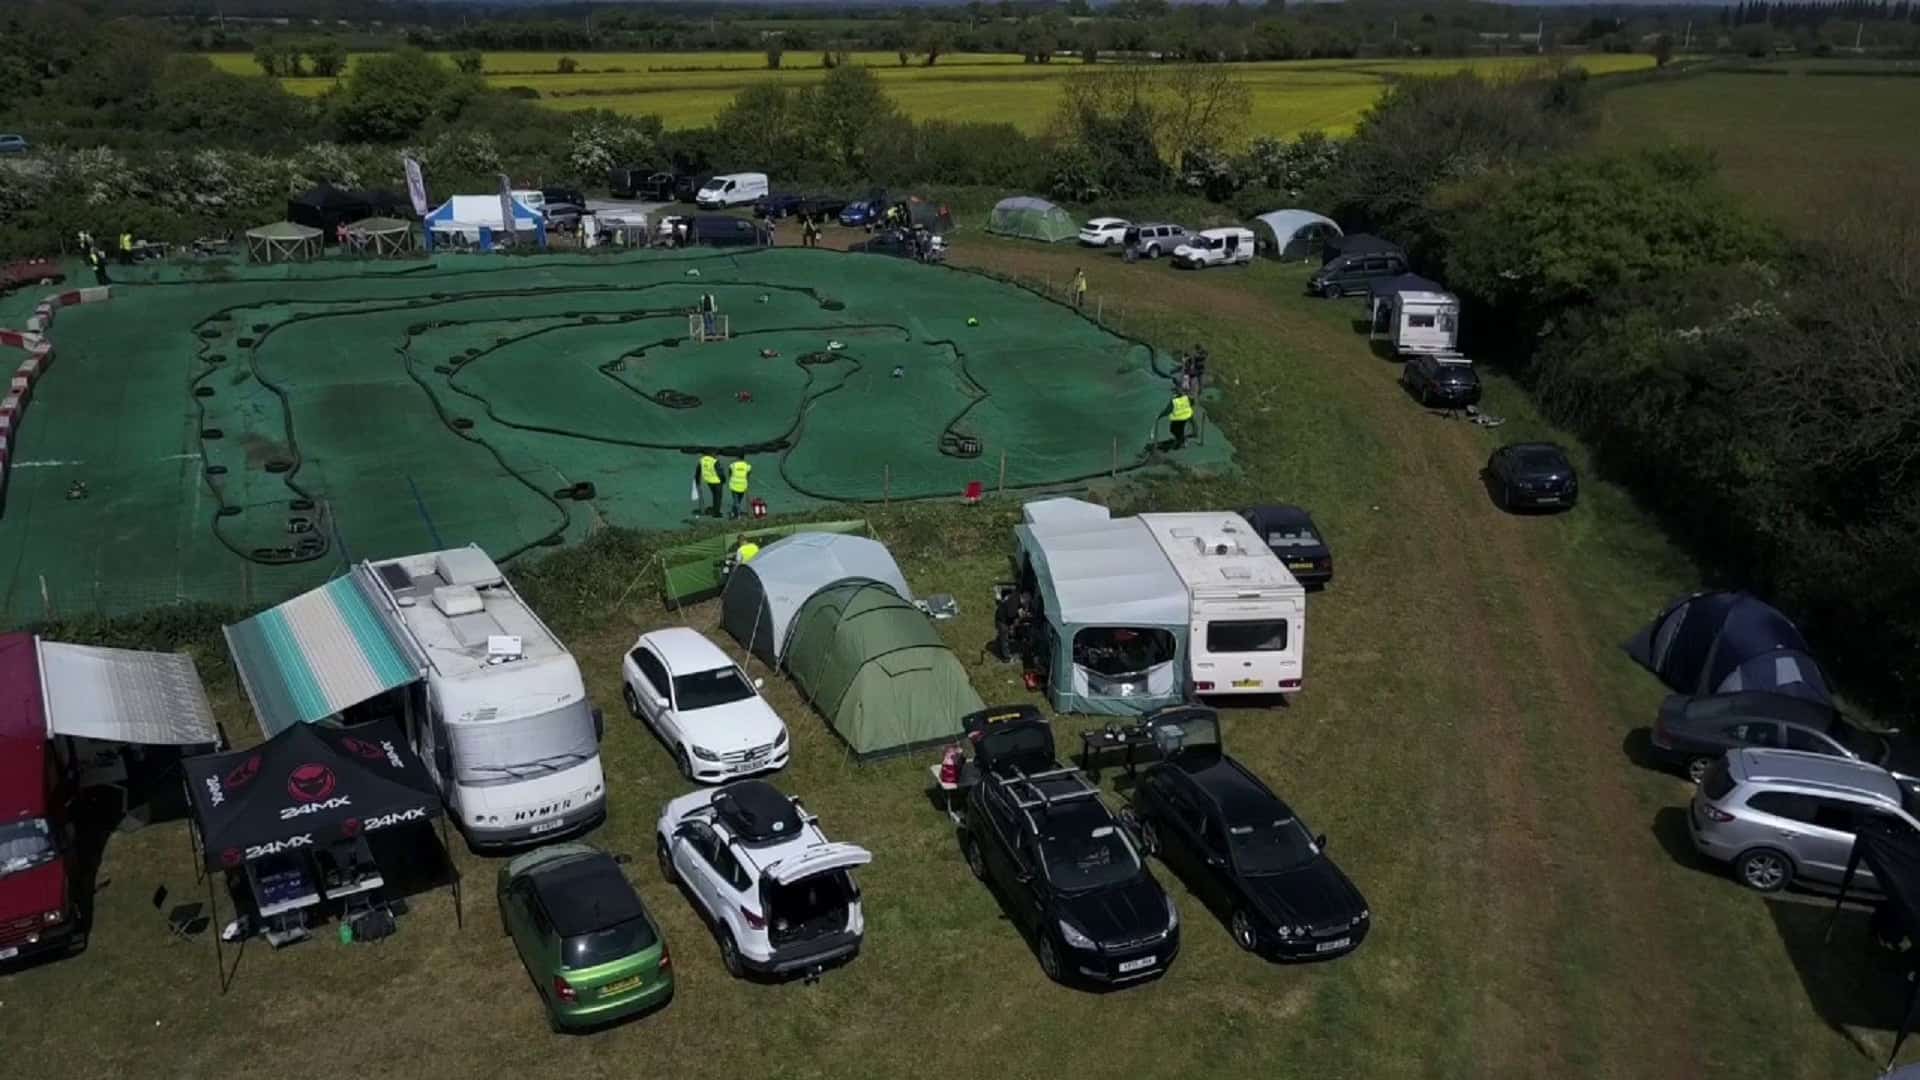 MMR Raceway in UK